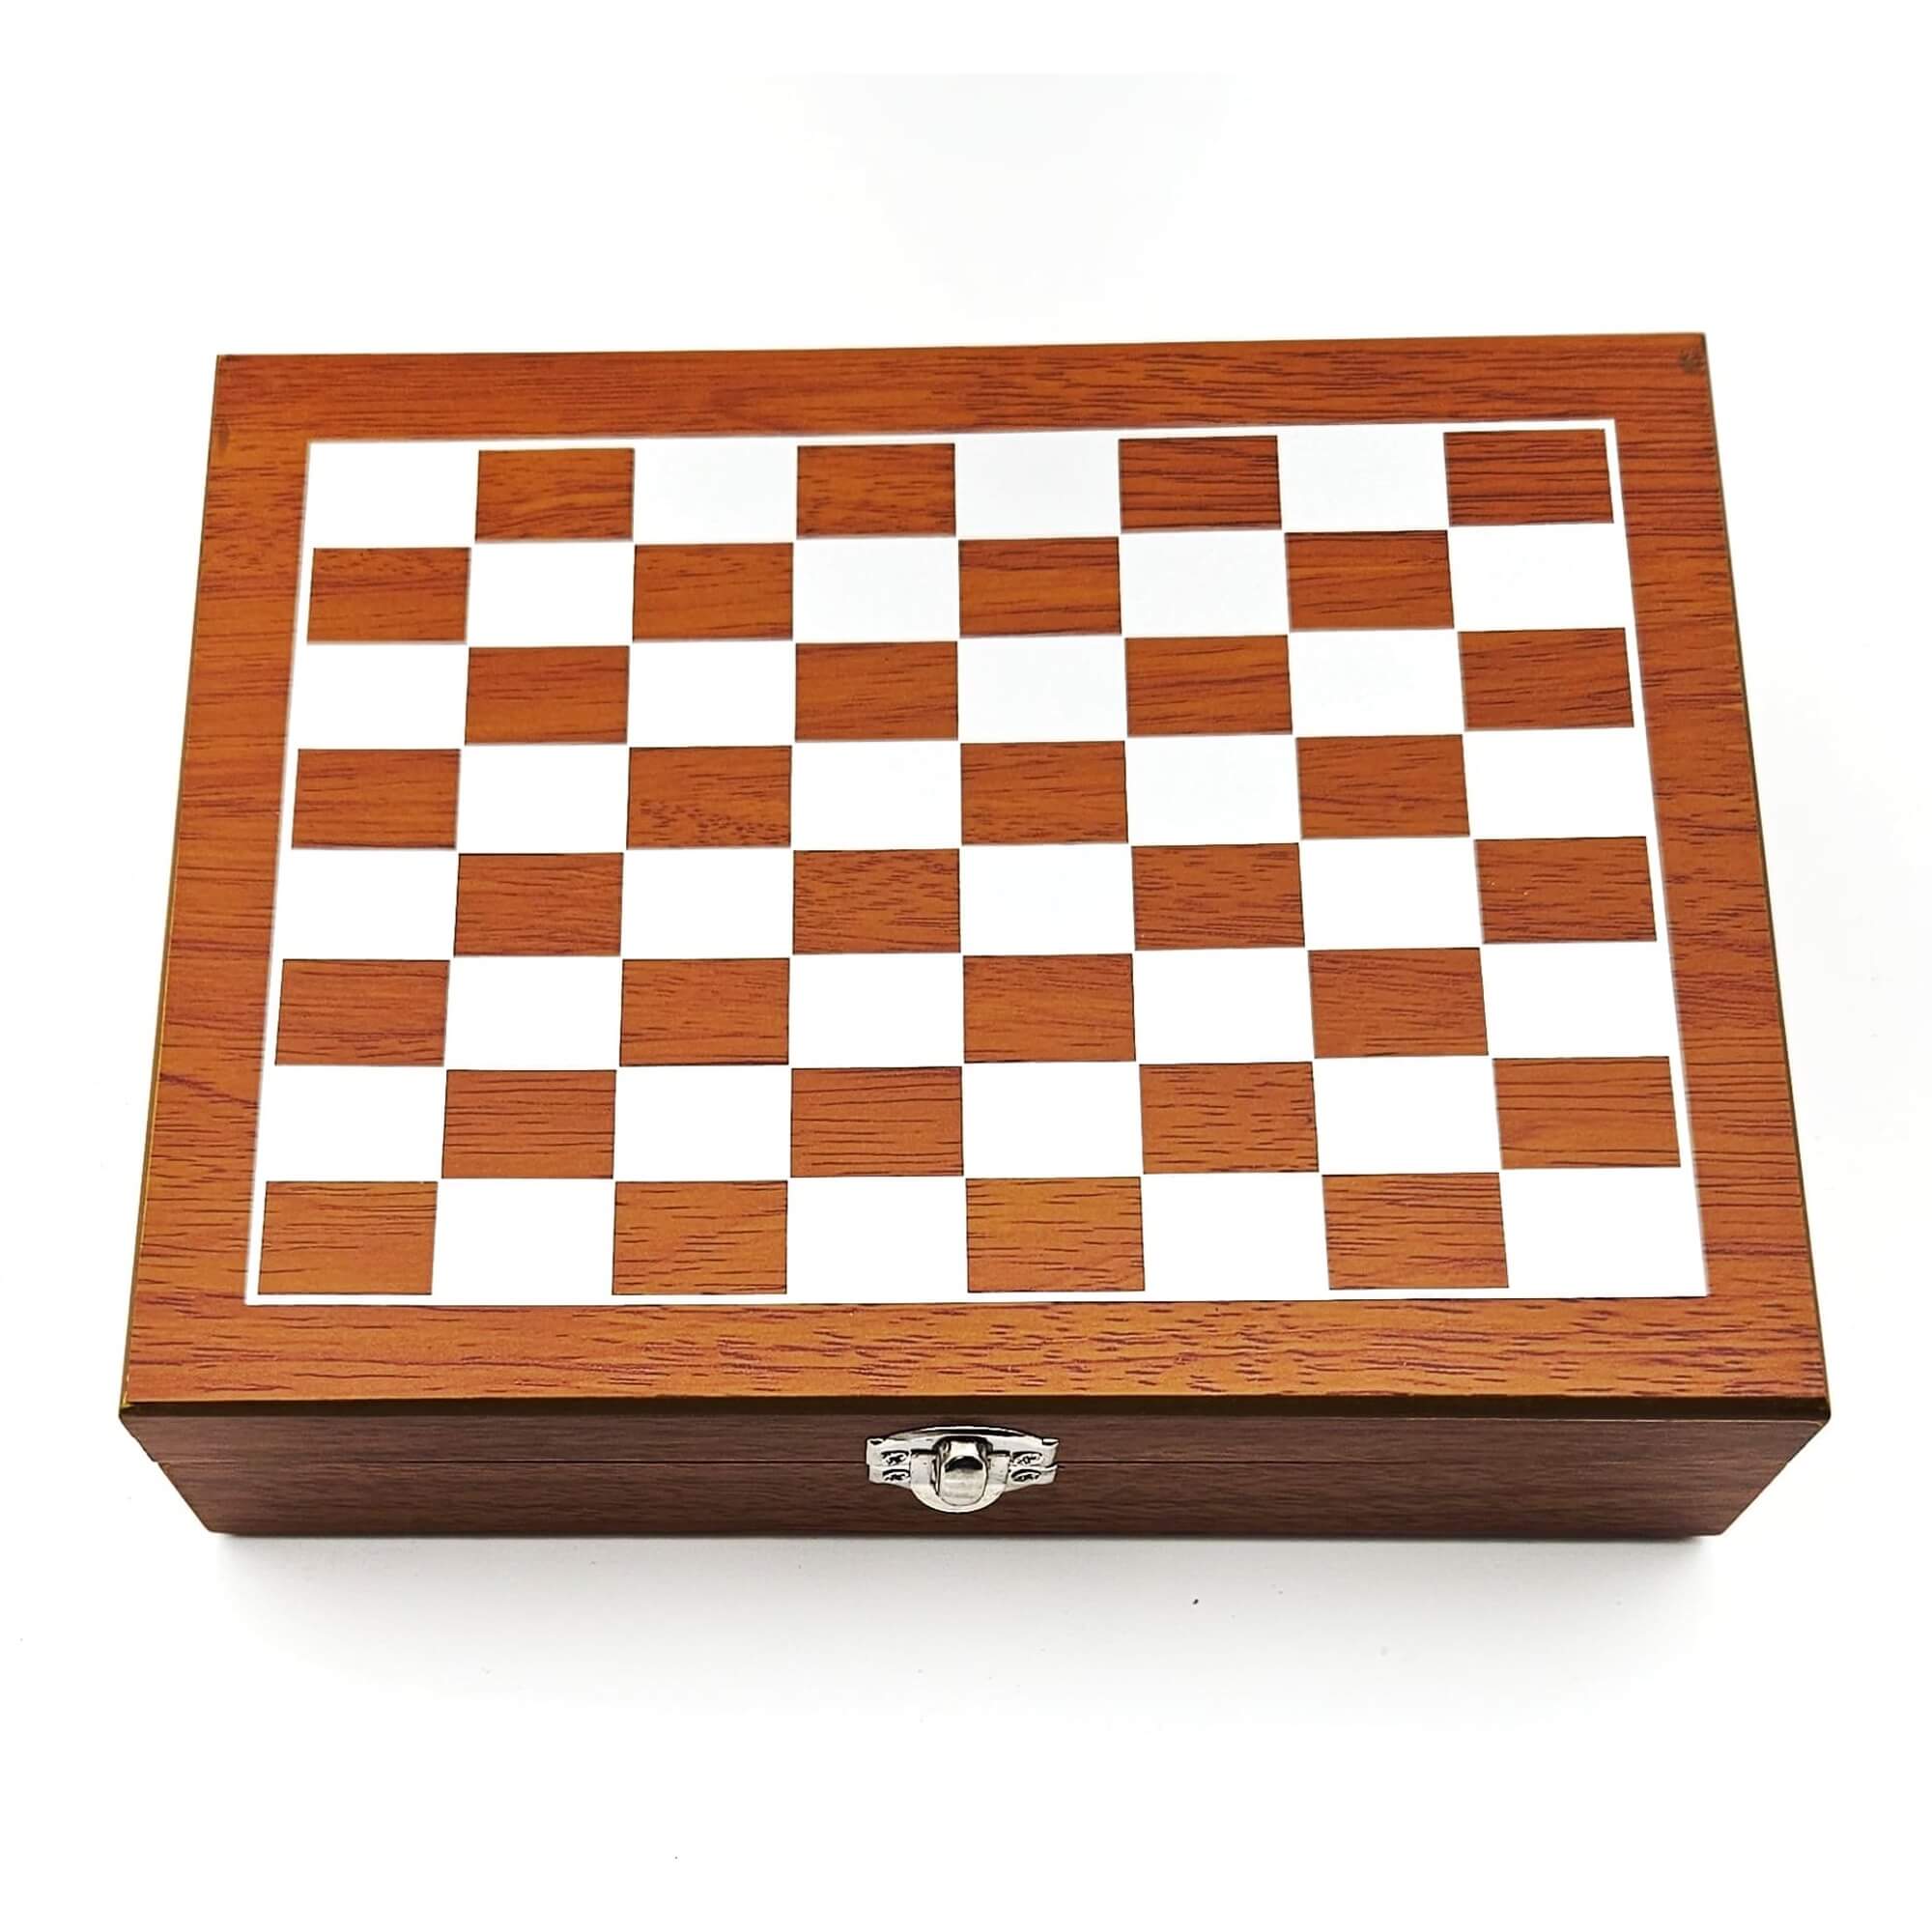 Cutie Cadou Chess Master Set cadou pentru femei barbati si companii cadou craciun cadou paste